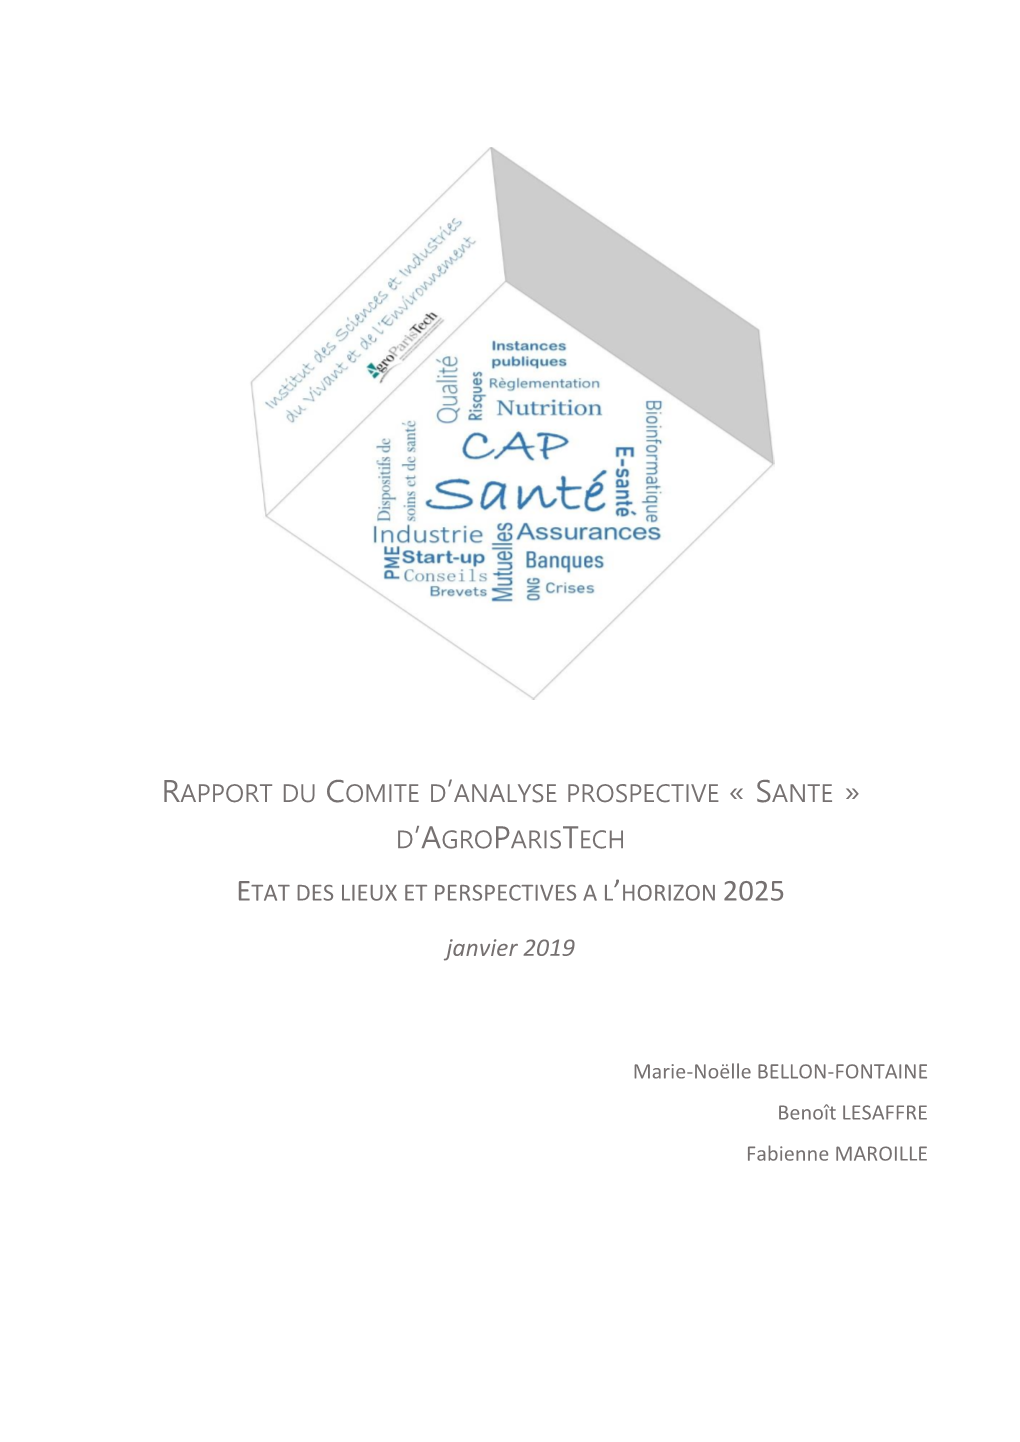 Rapport Du Comite D'analyse Prospective « Sante